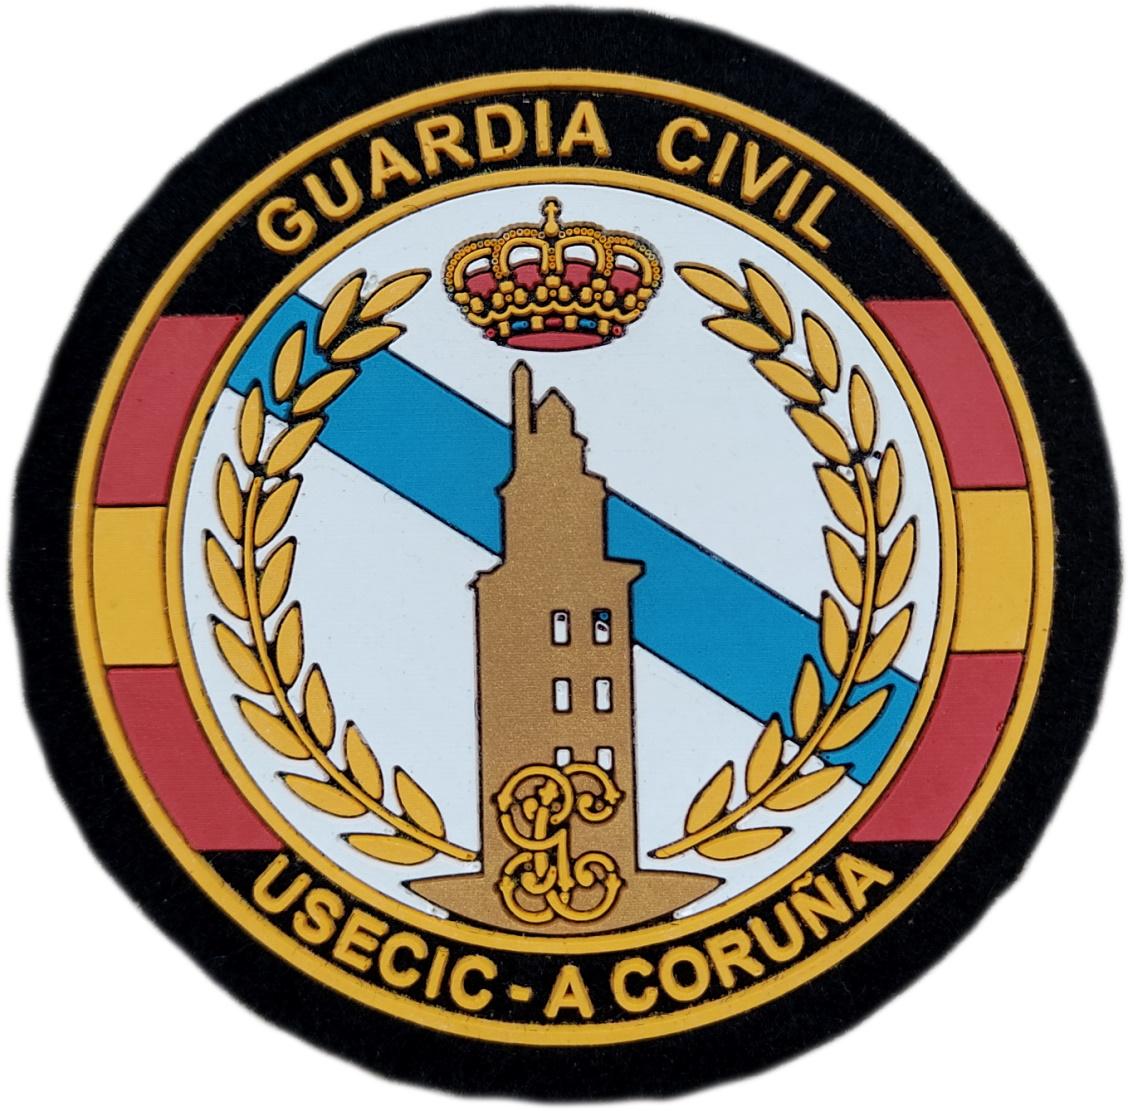 Guardia Civil Usecic A Coruña parche insignia emblema distintivo 